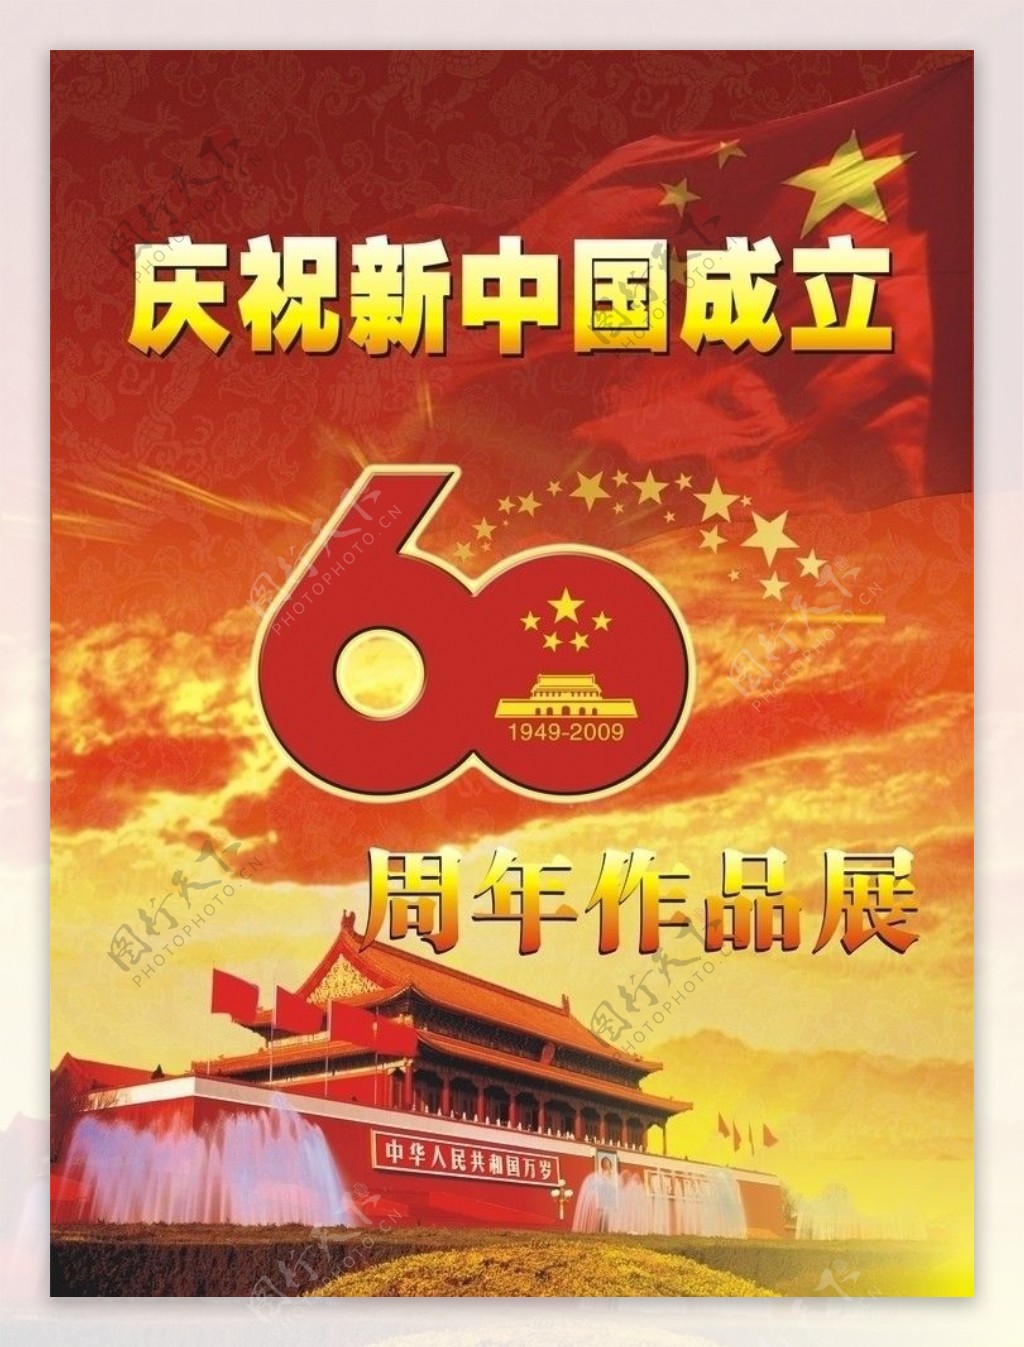 新中国成立60周年作品展图片